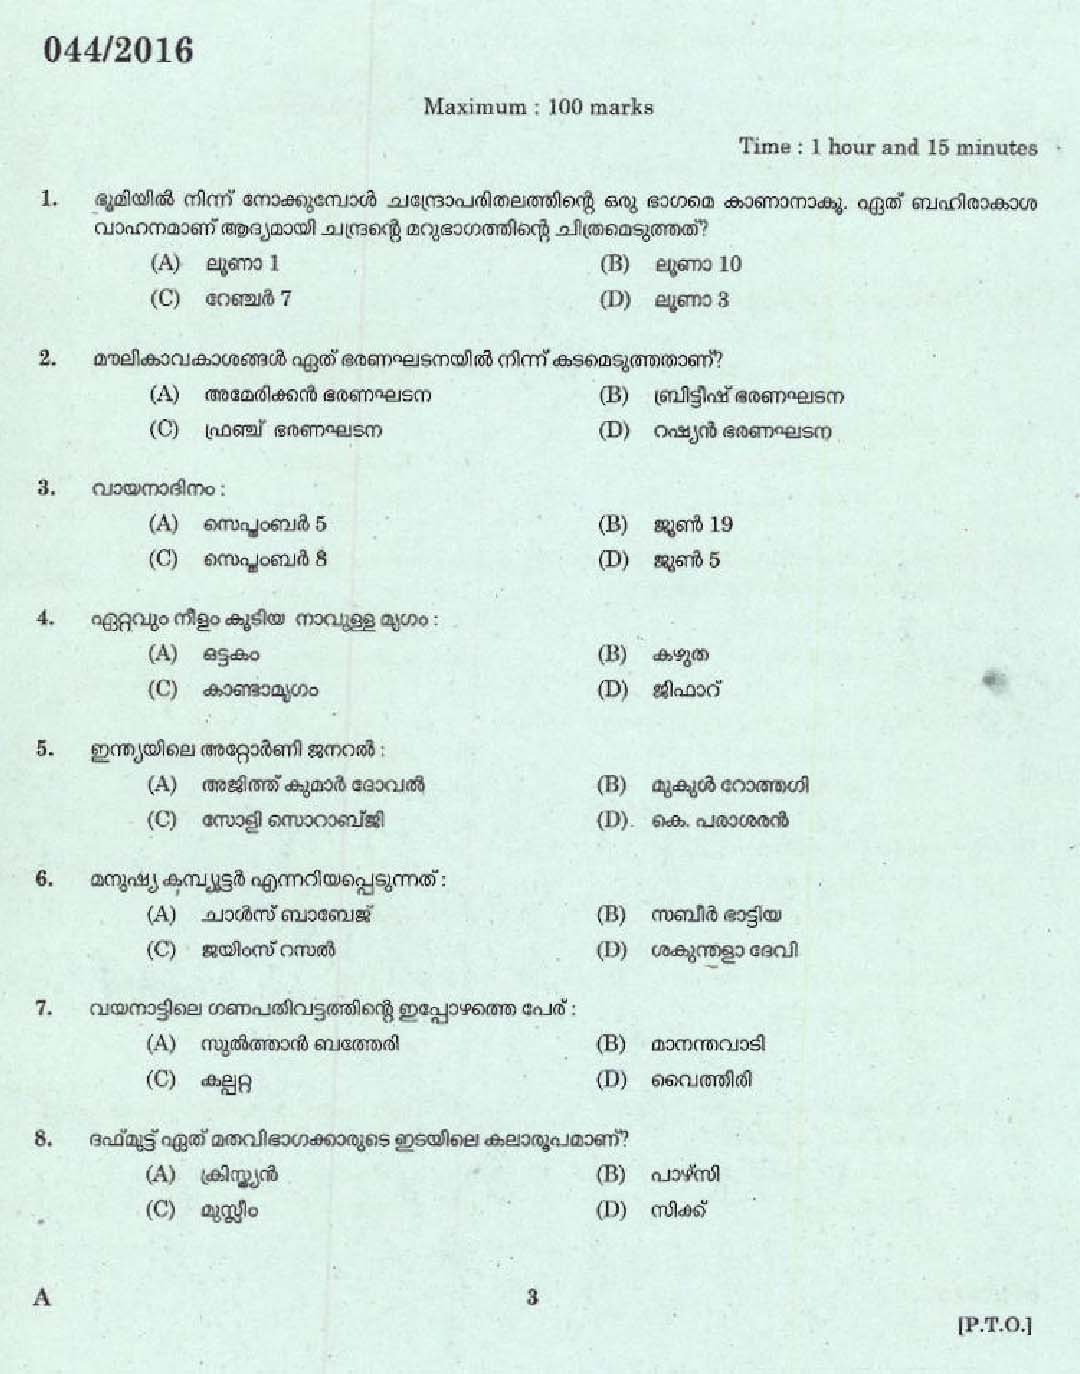 Kerala PSC L P School Assistant Question Code 0442016 1